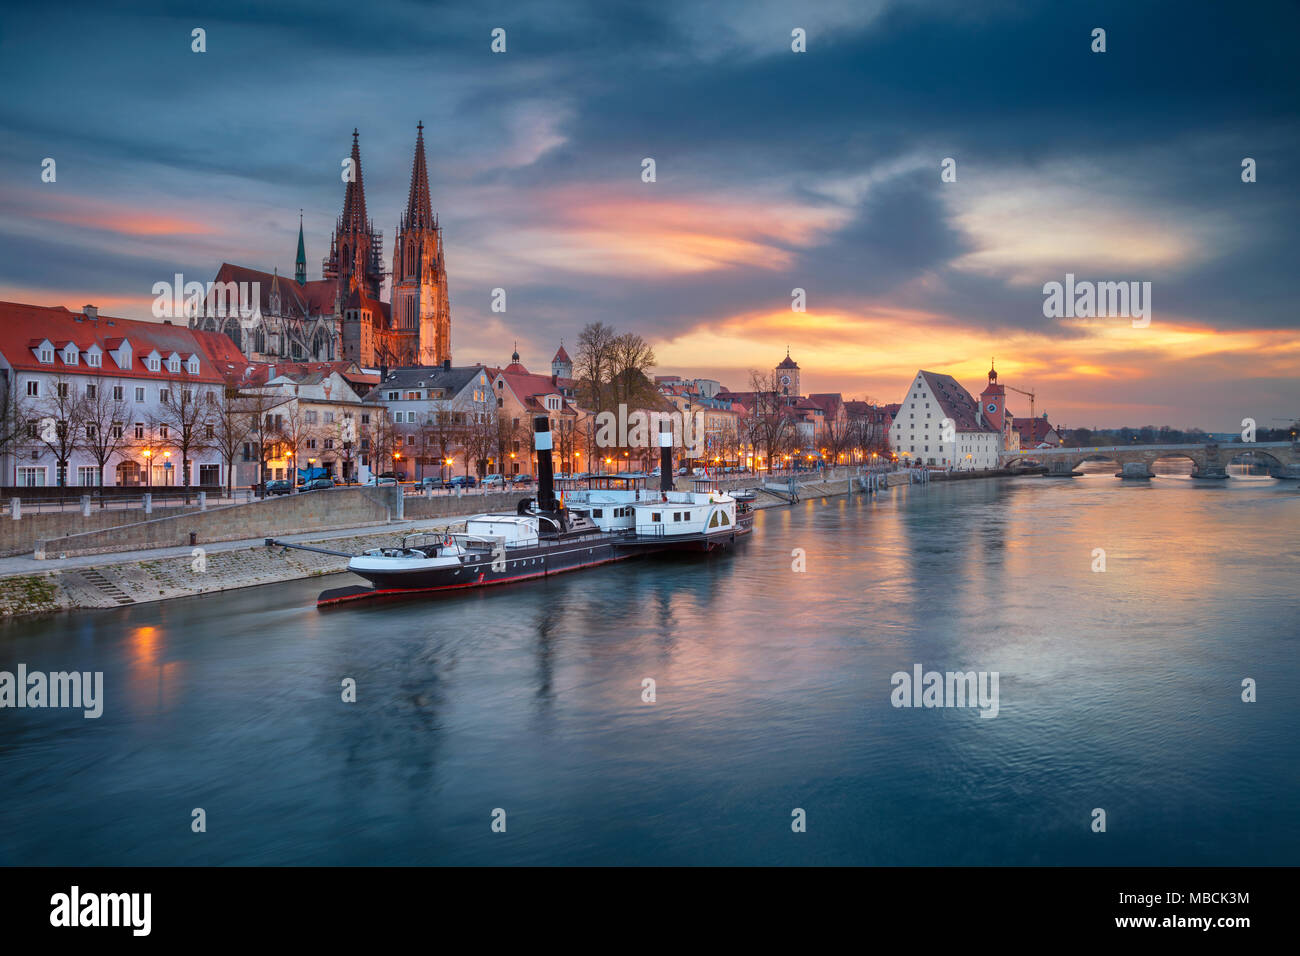 Regensburg. Stadtbild Bild von Regensburg, Deutschland im Frühjahr Sonnenuntergang. Stockfoto